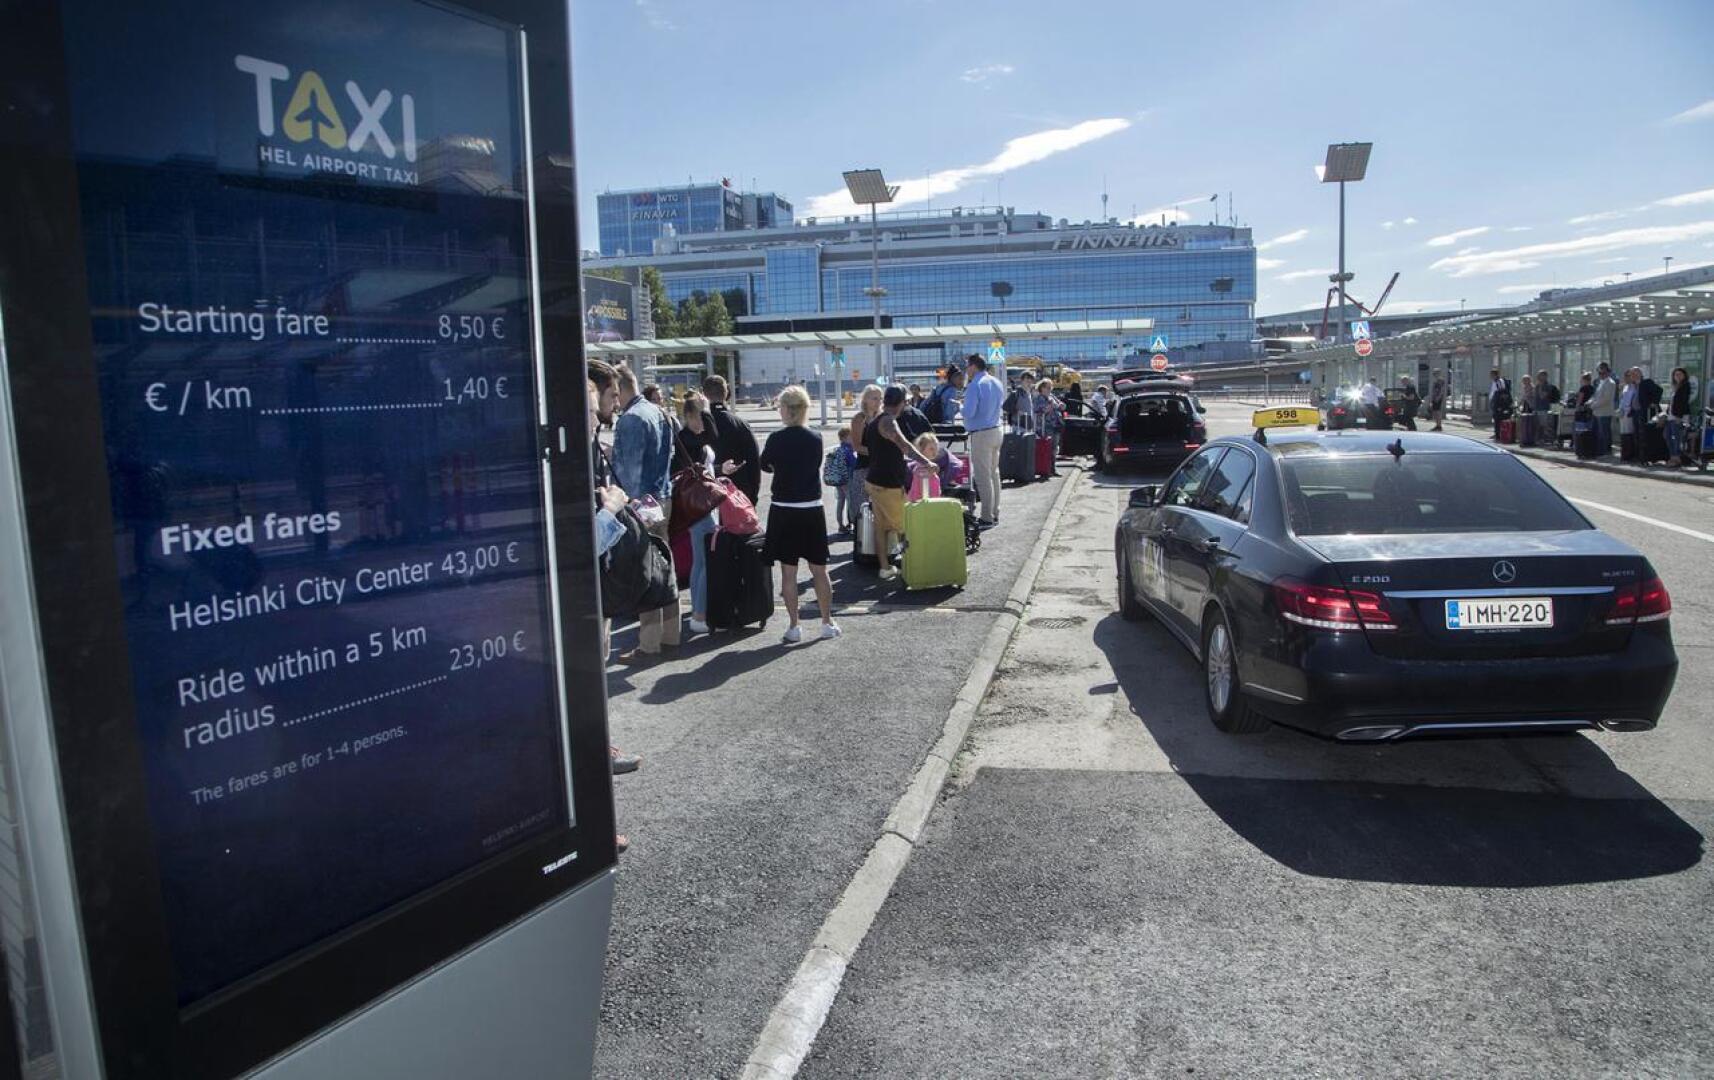 Edellisen hallituksen liikenne- ja viestintäministeri Anne Berner toteutti taksilain uudistuksen, joka on herättänyt kritiikkiä. Helsinki–Vantaan lentokentällä liikenne muuttui 1.7.2018.